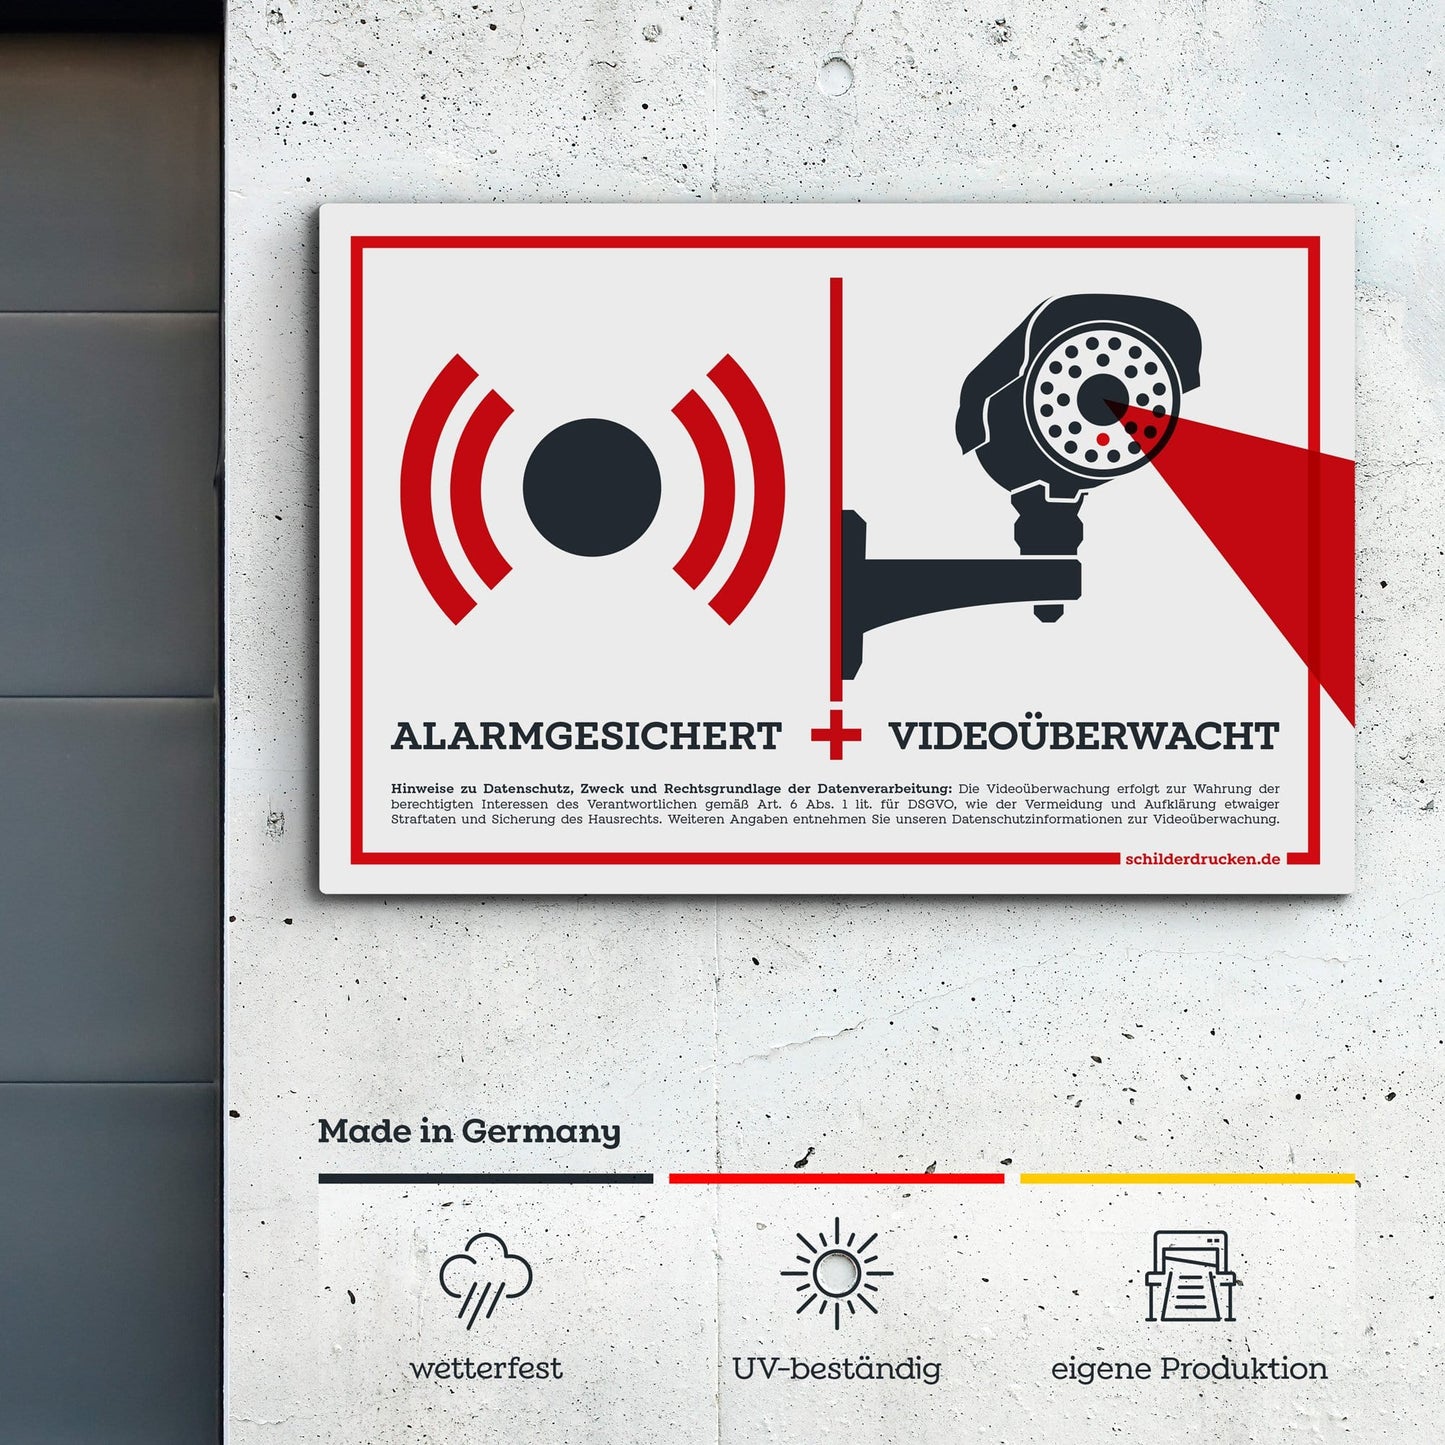 Alarmgesichert und videoüberwacht! 10 x 15 cm / weiss / Alu-Dibond online drucken lassen bei schilderdrucken.de